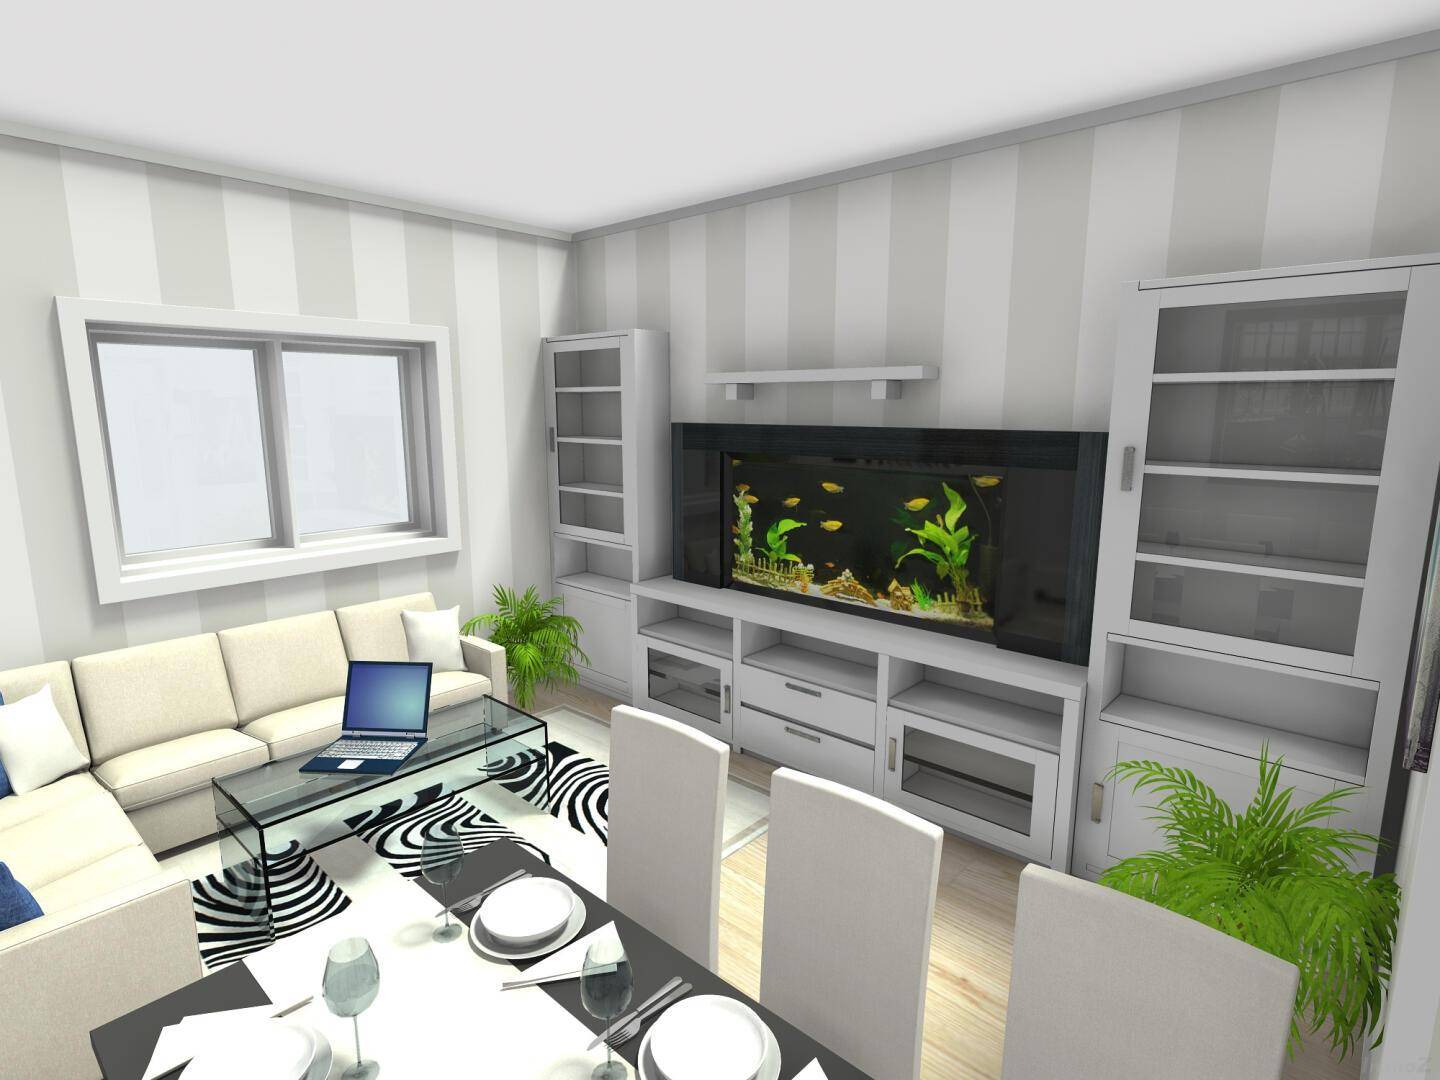 02 Wohnzimmer mit Essbereich - 3D Foto